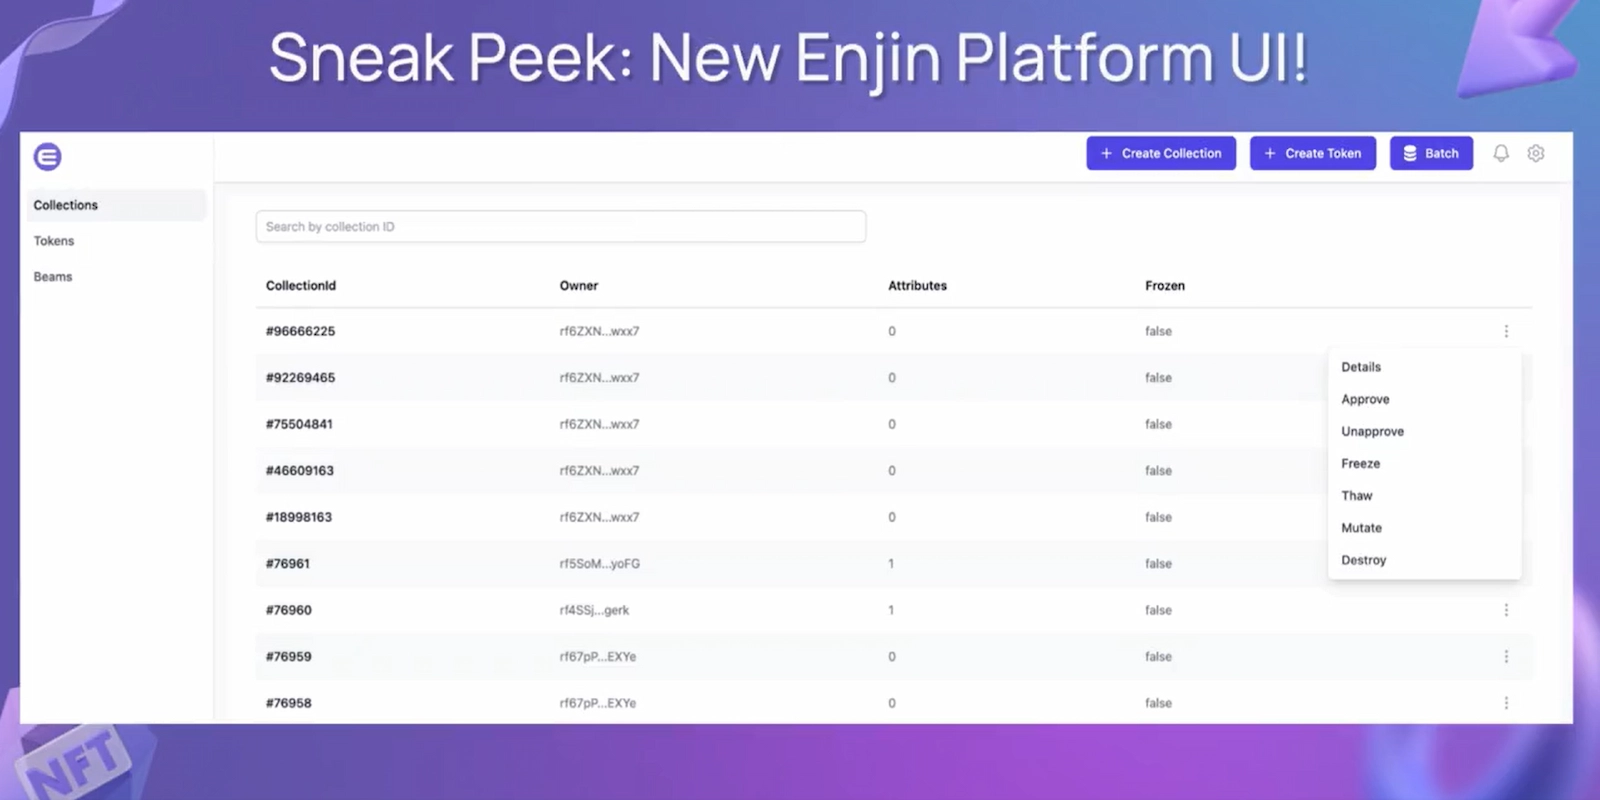 Enjin shared a screenshot of the new platform